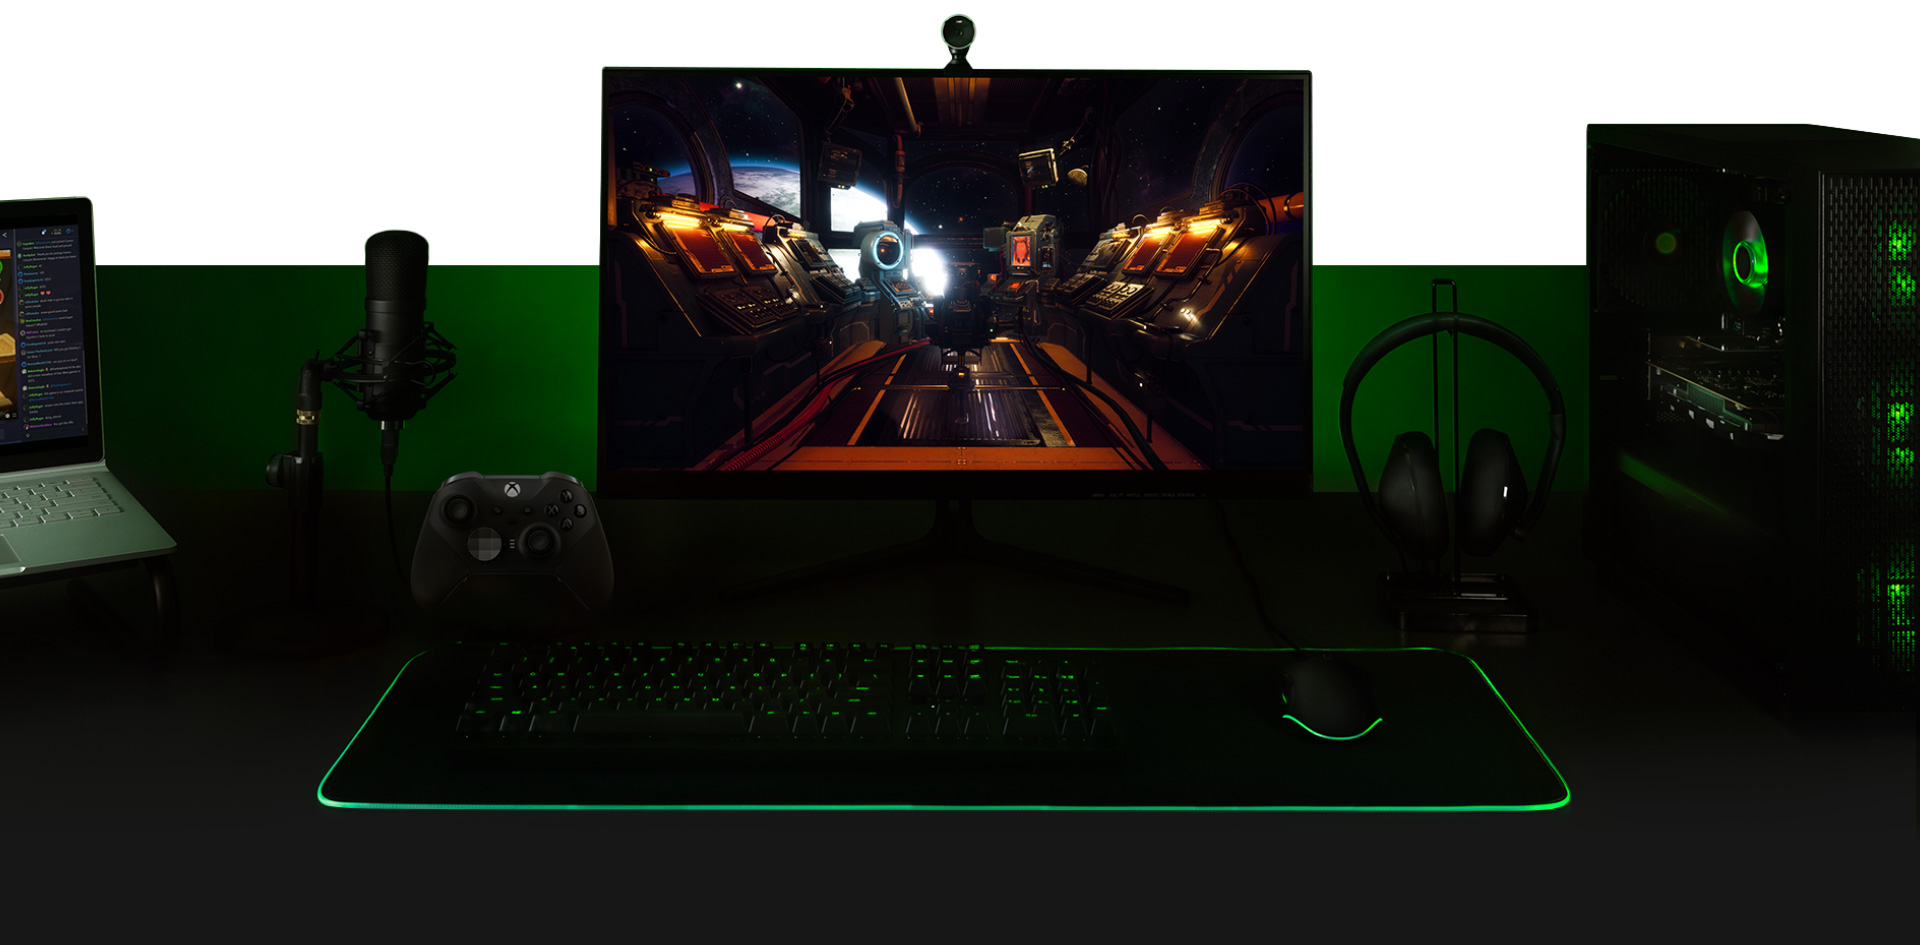 Stolní počítač s počítačem, monitor s obrazovkou ze hry The Outer Worlds, klávesnice, ovladač Xbox One, mikrofon a přenosný počítač připravené společně.